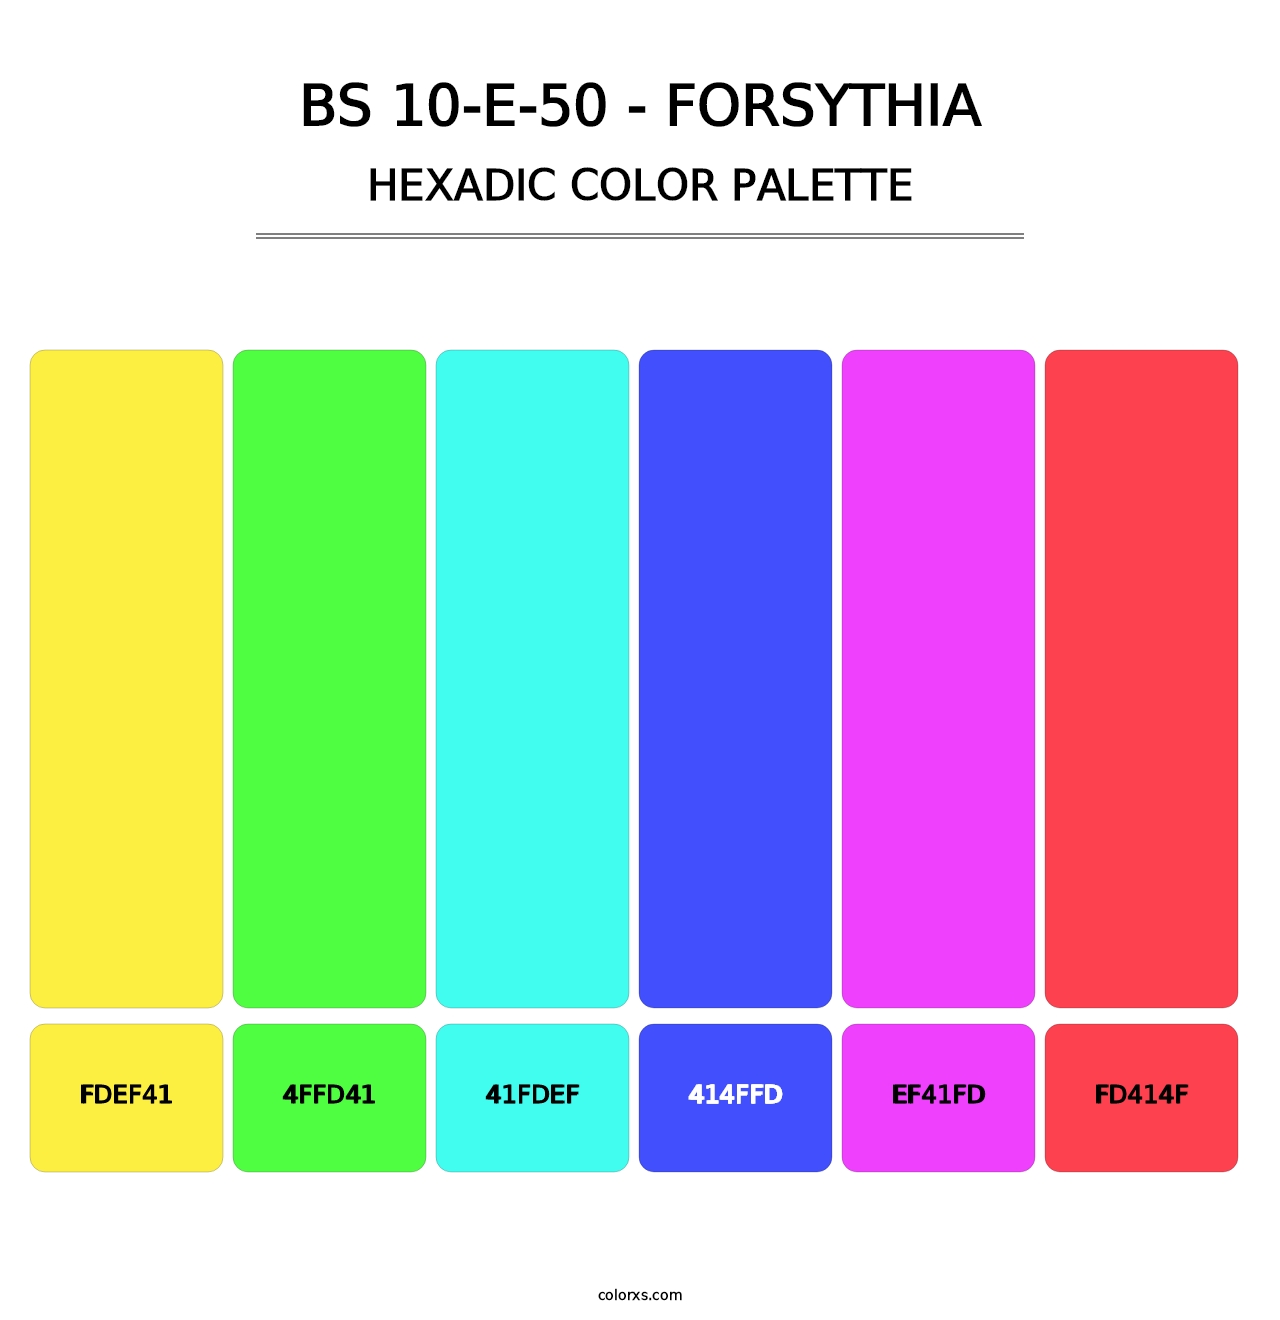 BS 10-E-50 - Forsythia - Hexadic Color Palette